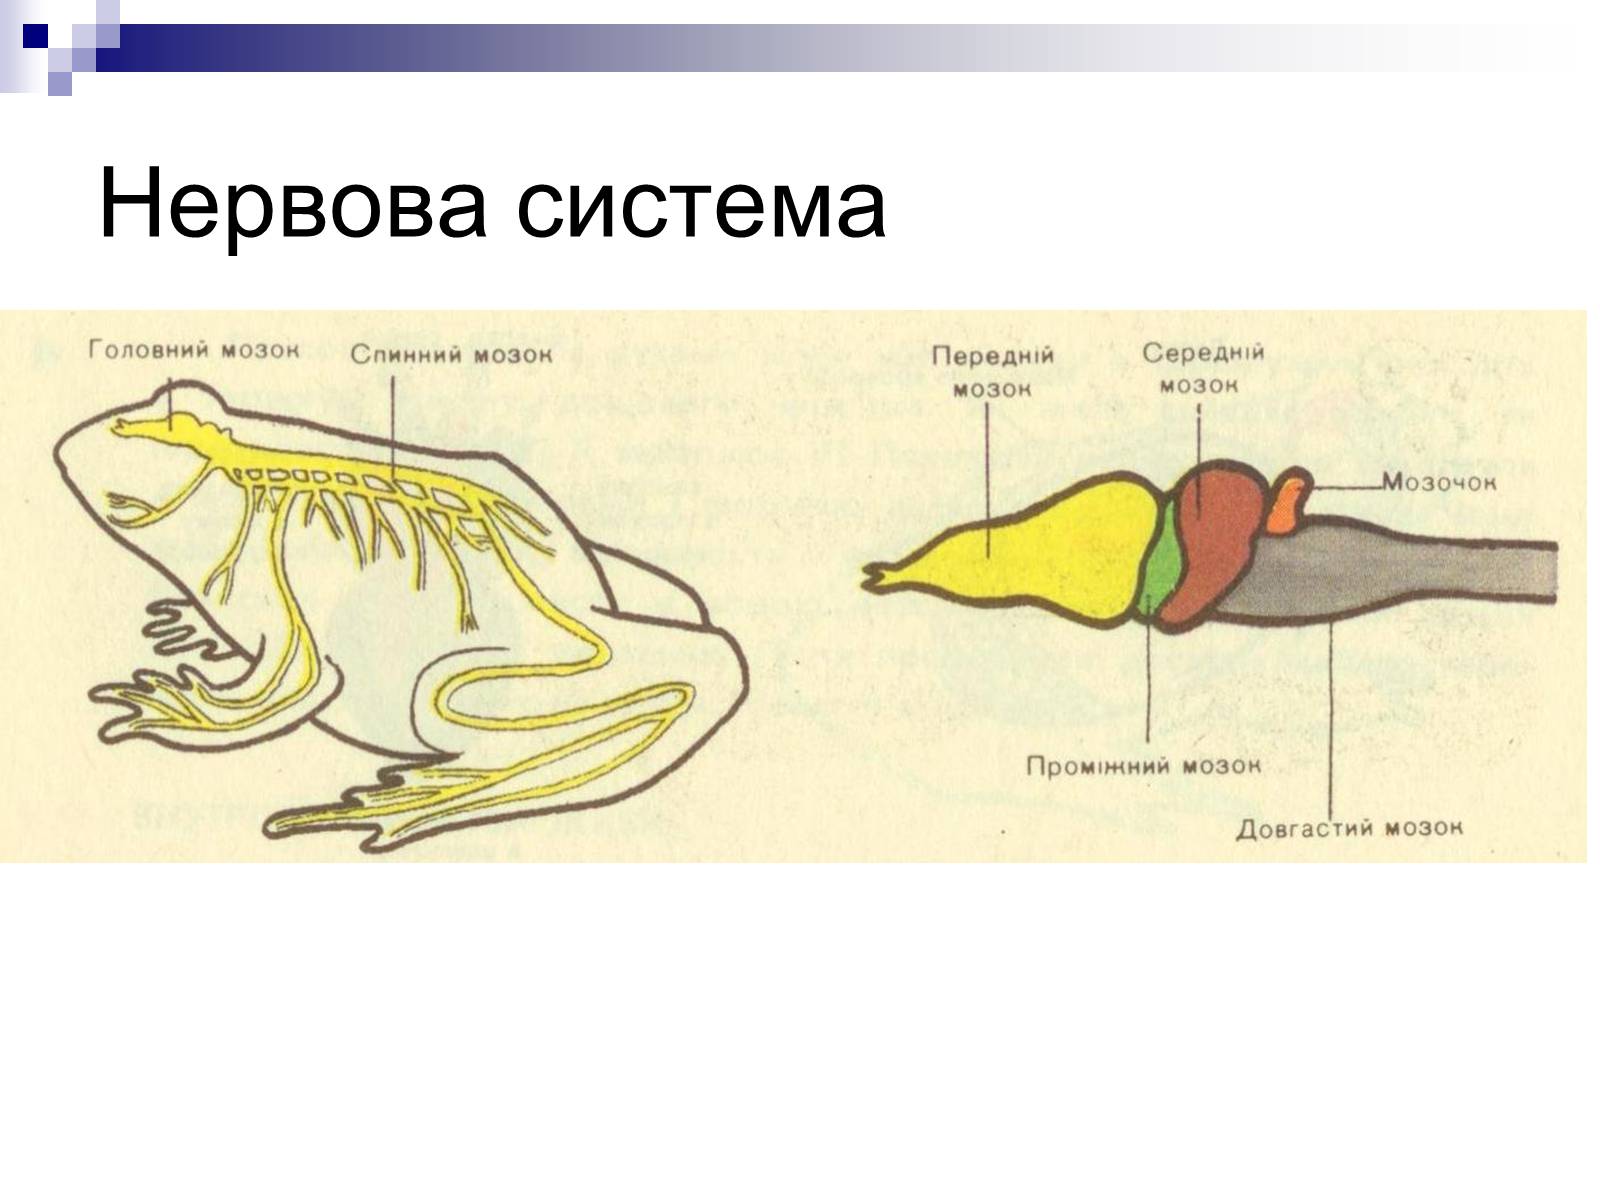 Органы пищеварительной системы земноводных в верной последовательности. Внутреннее строение лягушки нервная система. Нервная система амфибий схема. Нервная система земноводных схема. Нерв система амфибий.